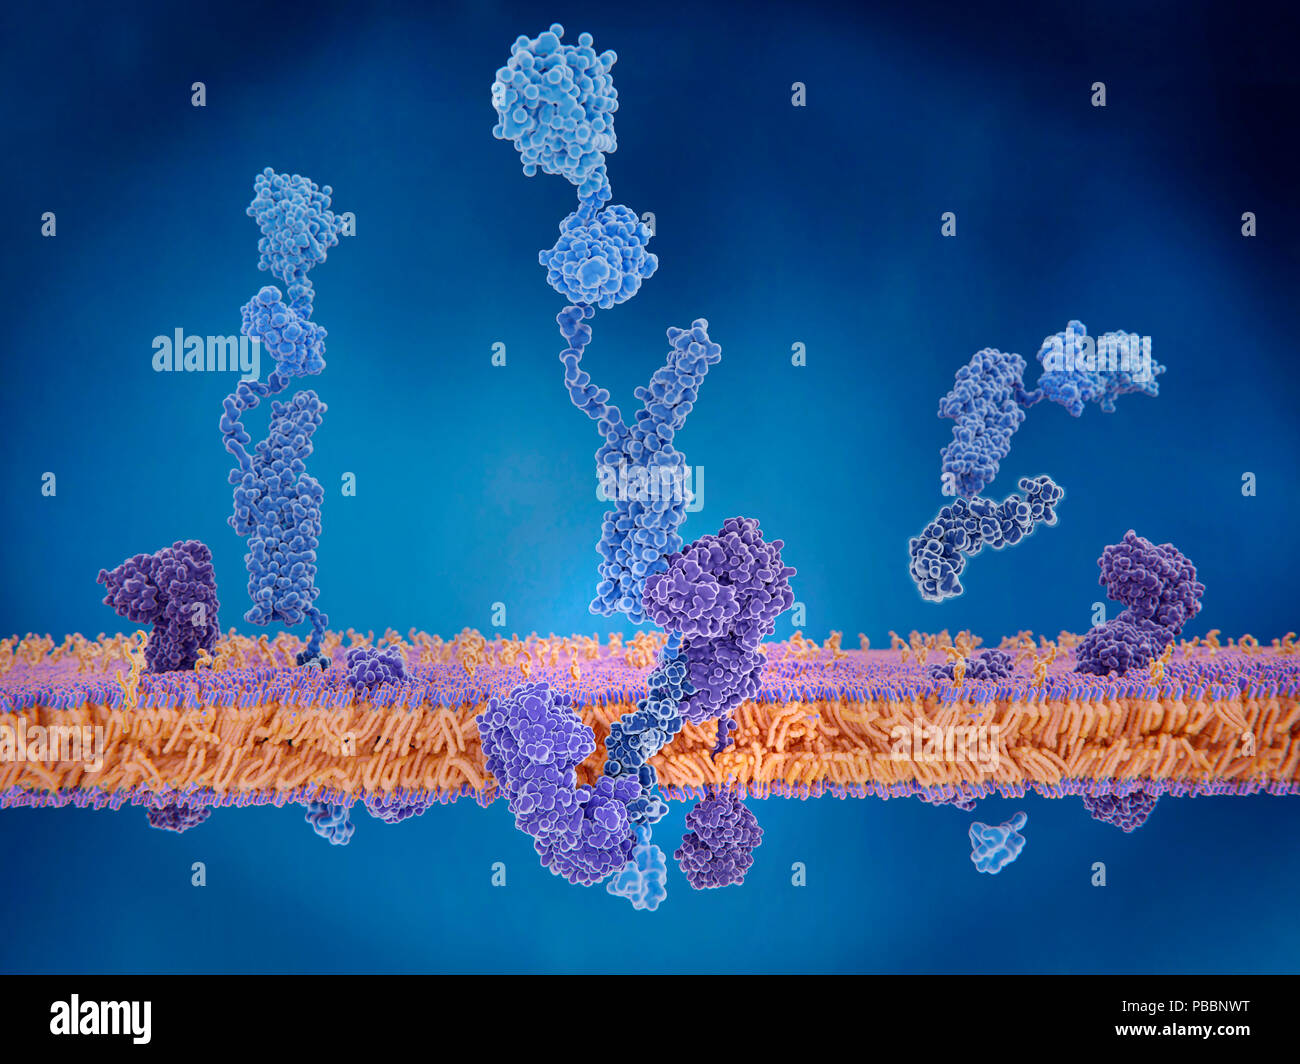 Amyloid Precursor Protein Spaltung. Abbildung der drei Phasen (vor, während und nach) in der Spaltung des Amyloid Precursor Proteins (APP). Auf der linken Seite, APP (blau) wird zwischen zwei Enzym Moleküle: Gamma und beta-Sekretase. In der Mitte, die die Enzyme haben zu APP gebunden. Rechts: die Spaltung ist aufgetreten und die APP Molekül hat in vier Fragmente, von denen eine noch in der Zellmembran eingebettet ist getrennt. Stockfoto